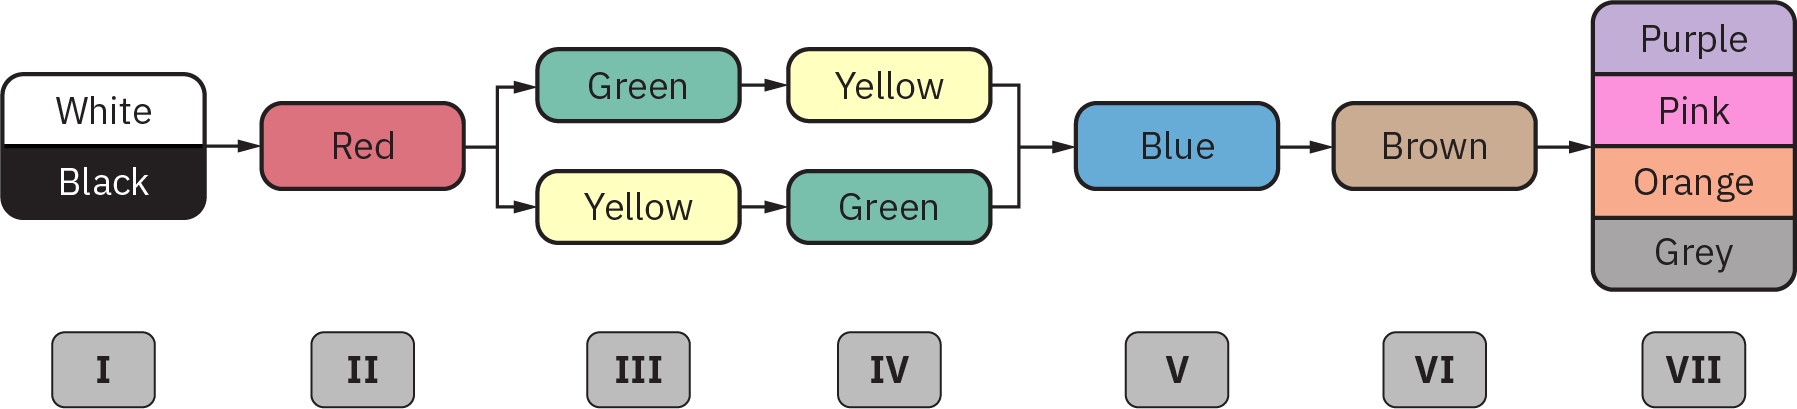 رسم تخطيطي يوضح ما يلي: في المرحلة 1، علامات «الأبيض» و «الأسود»؛ في المرحلة 2، علامة «الأحمر»؛ في المرحلة 3، علامات «الأخضر» و «الأصفر»؛ في المرحلة 4، علامات «الأصفر» و «الأخضر»؛ في المرحلة 5، «الأزرق»؛ في المرحلة 6، «البني»؛ وفي المرحلة 7، «الأرجواني»، «الوردي»، «البرتقالي» و «الرمادي»».